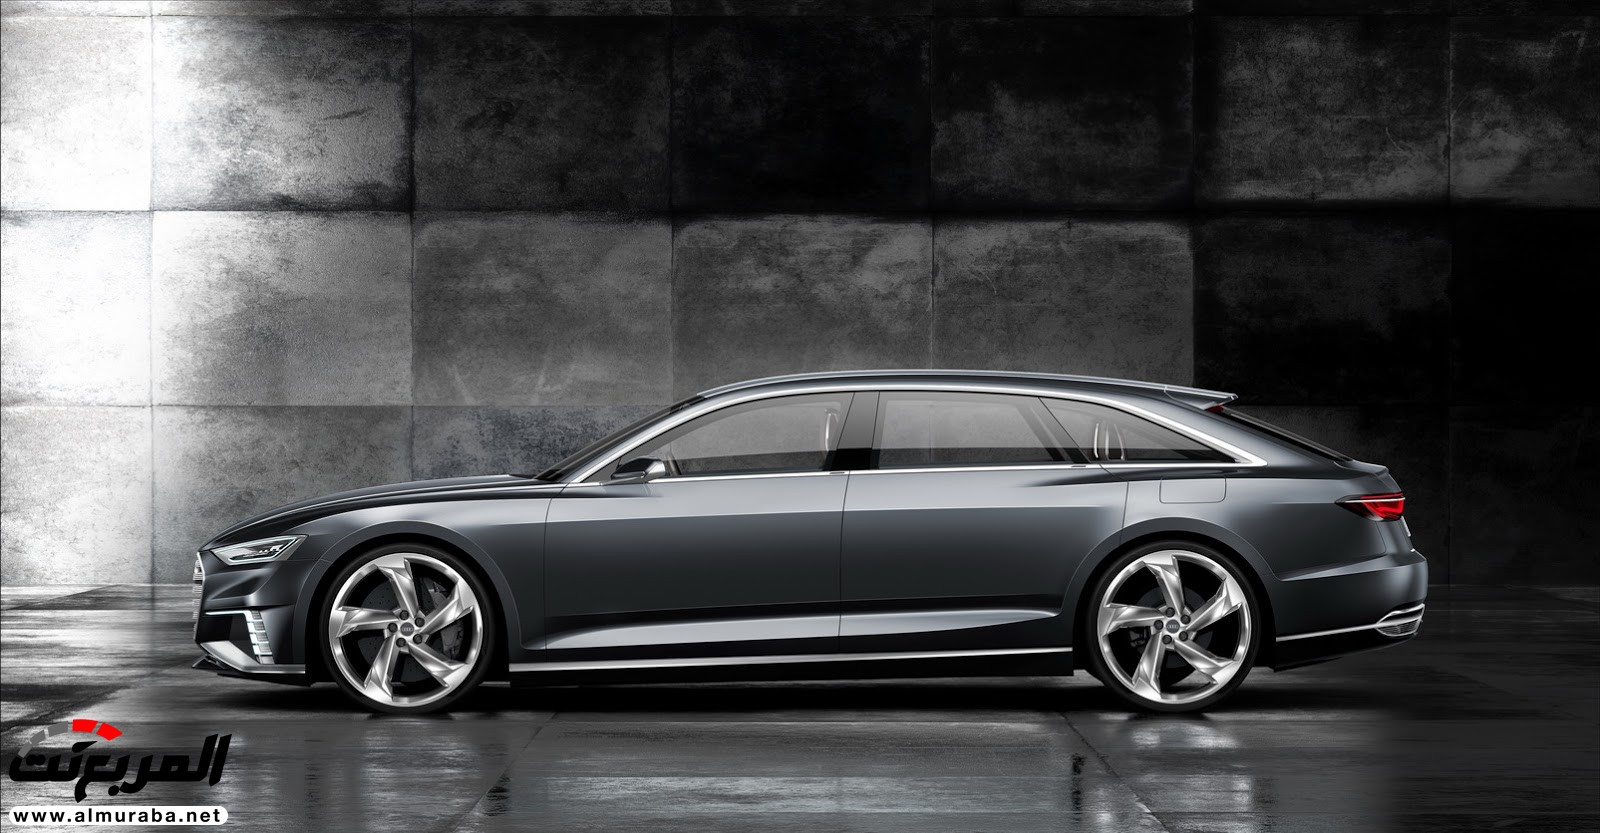 "أودي" A6 الجيل القادم 2019 سيتغير شكلها جذريا وسيتم تدشينها خلال العام المقبل Audi 13